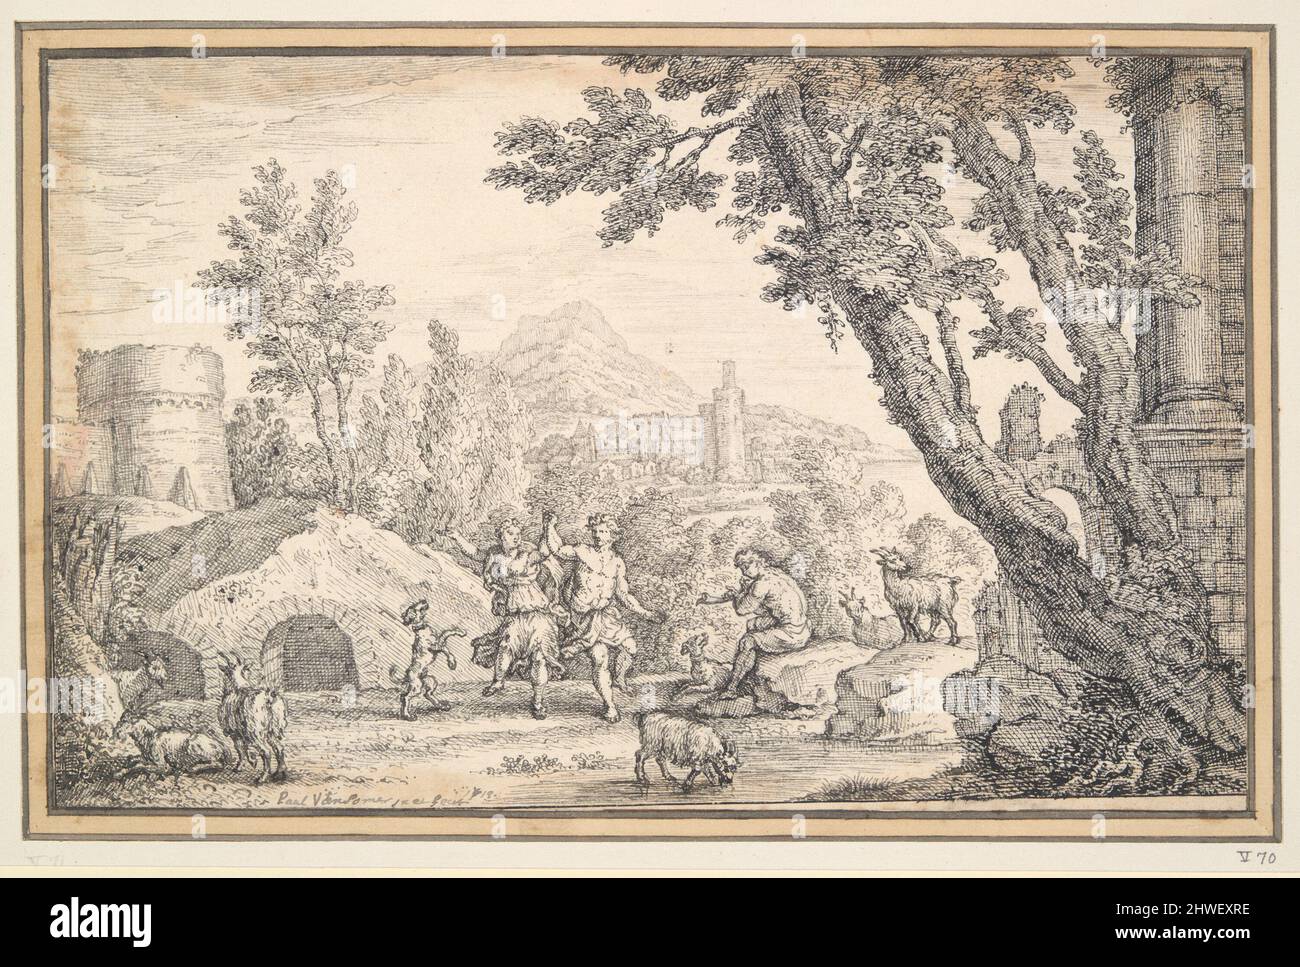 La danza di Shepperd nel paesaggio classico. Artista: Paul van Somer, olandese, ca. 1649–1694 Foto Stock